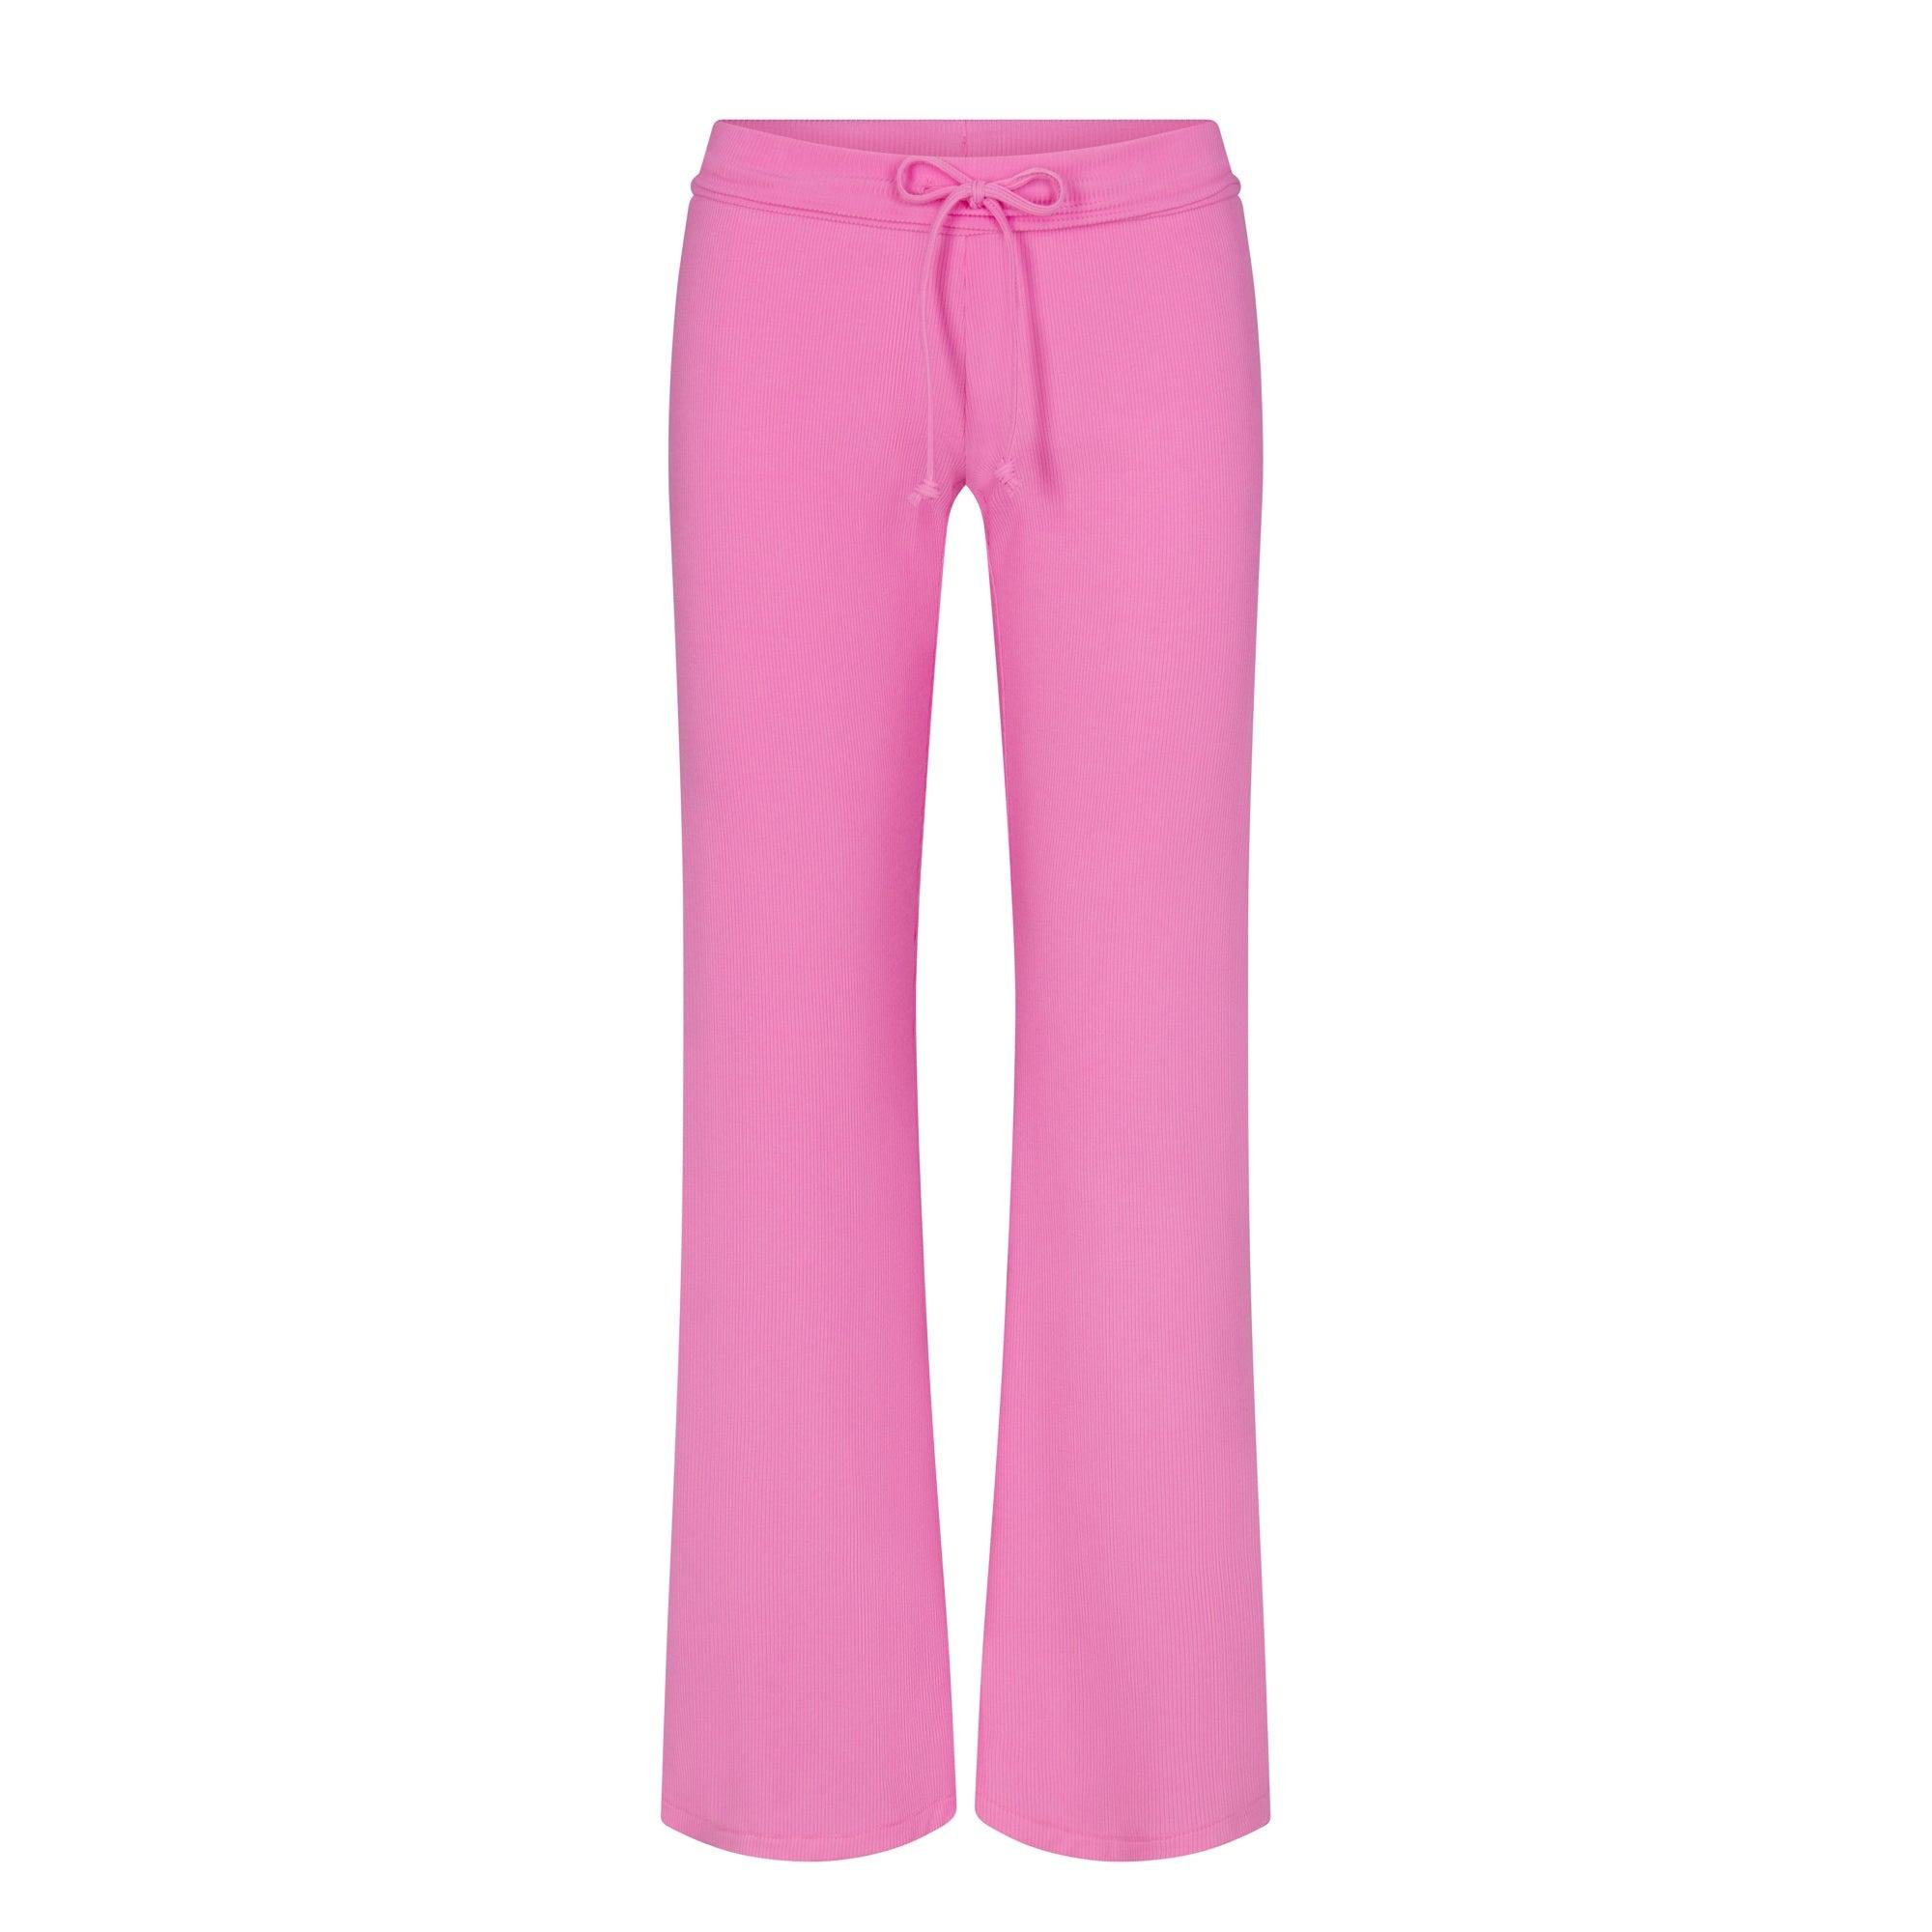 Skims Drawstring Pants in Pink